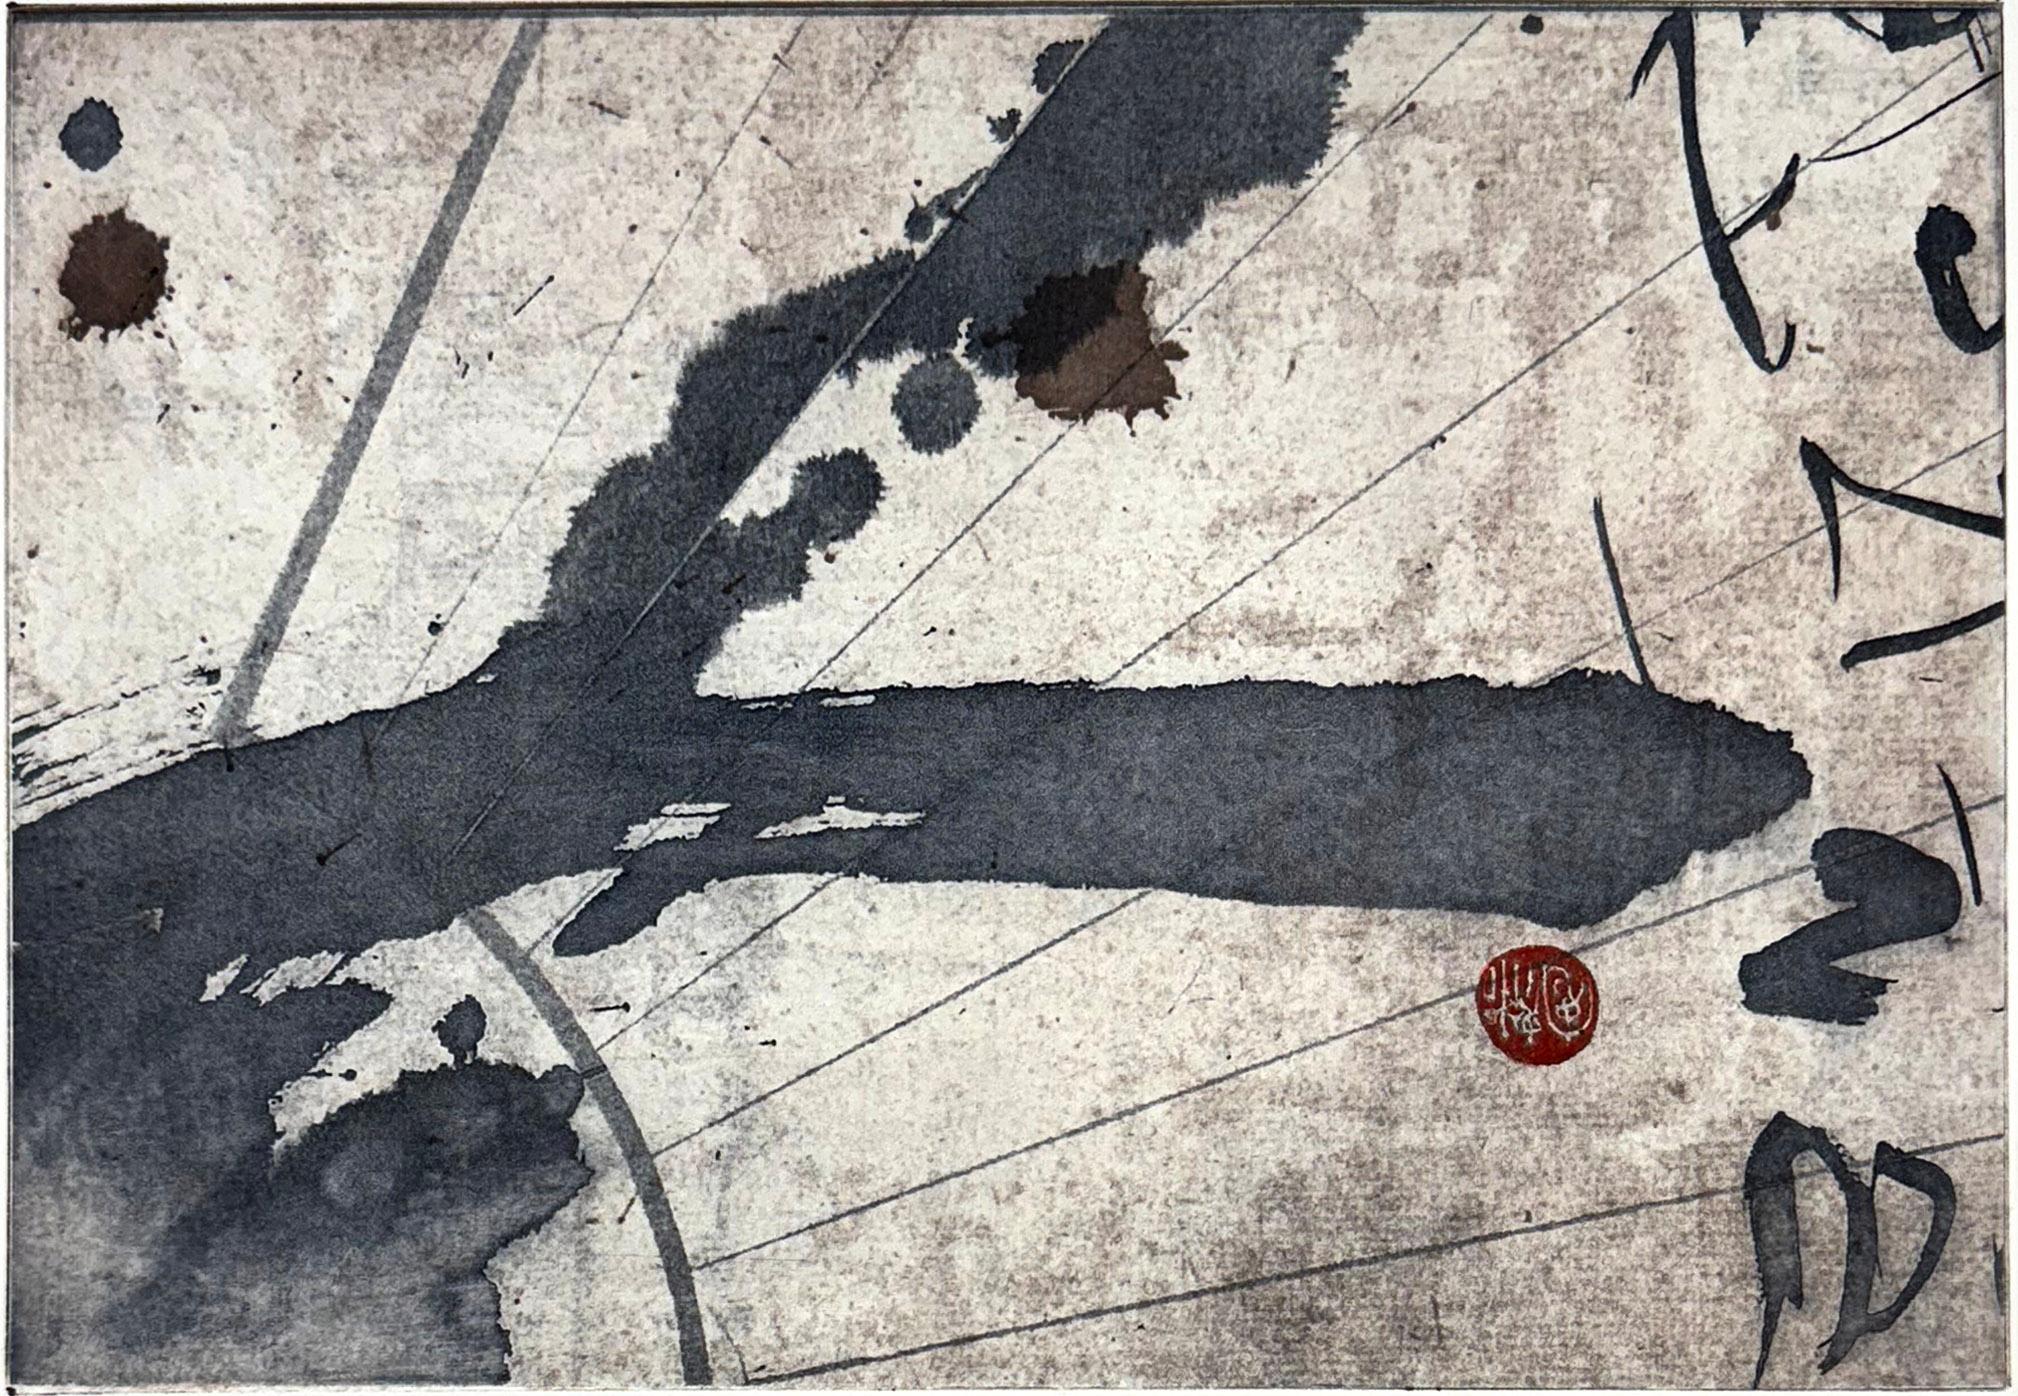 Asiatisches abstraktes Muster mit Kalligraphie. Signierte und nummerierte Auflage von 40 Exemplaren. Erstellt mit Shunyis eigener Methode von Softlack und Photopolymer auf Papier.

Barbara Shunyi wurde 1966 in Cadiz, Spanien, geboren. Derzeit lebt